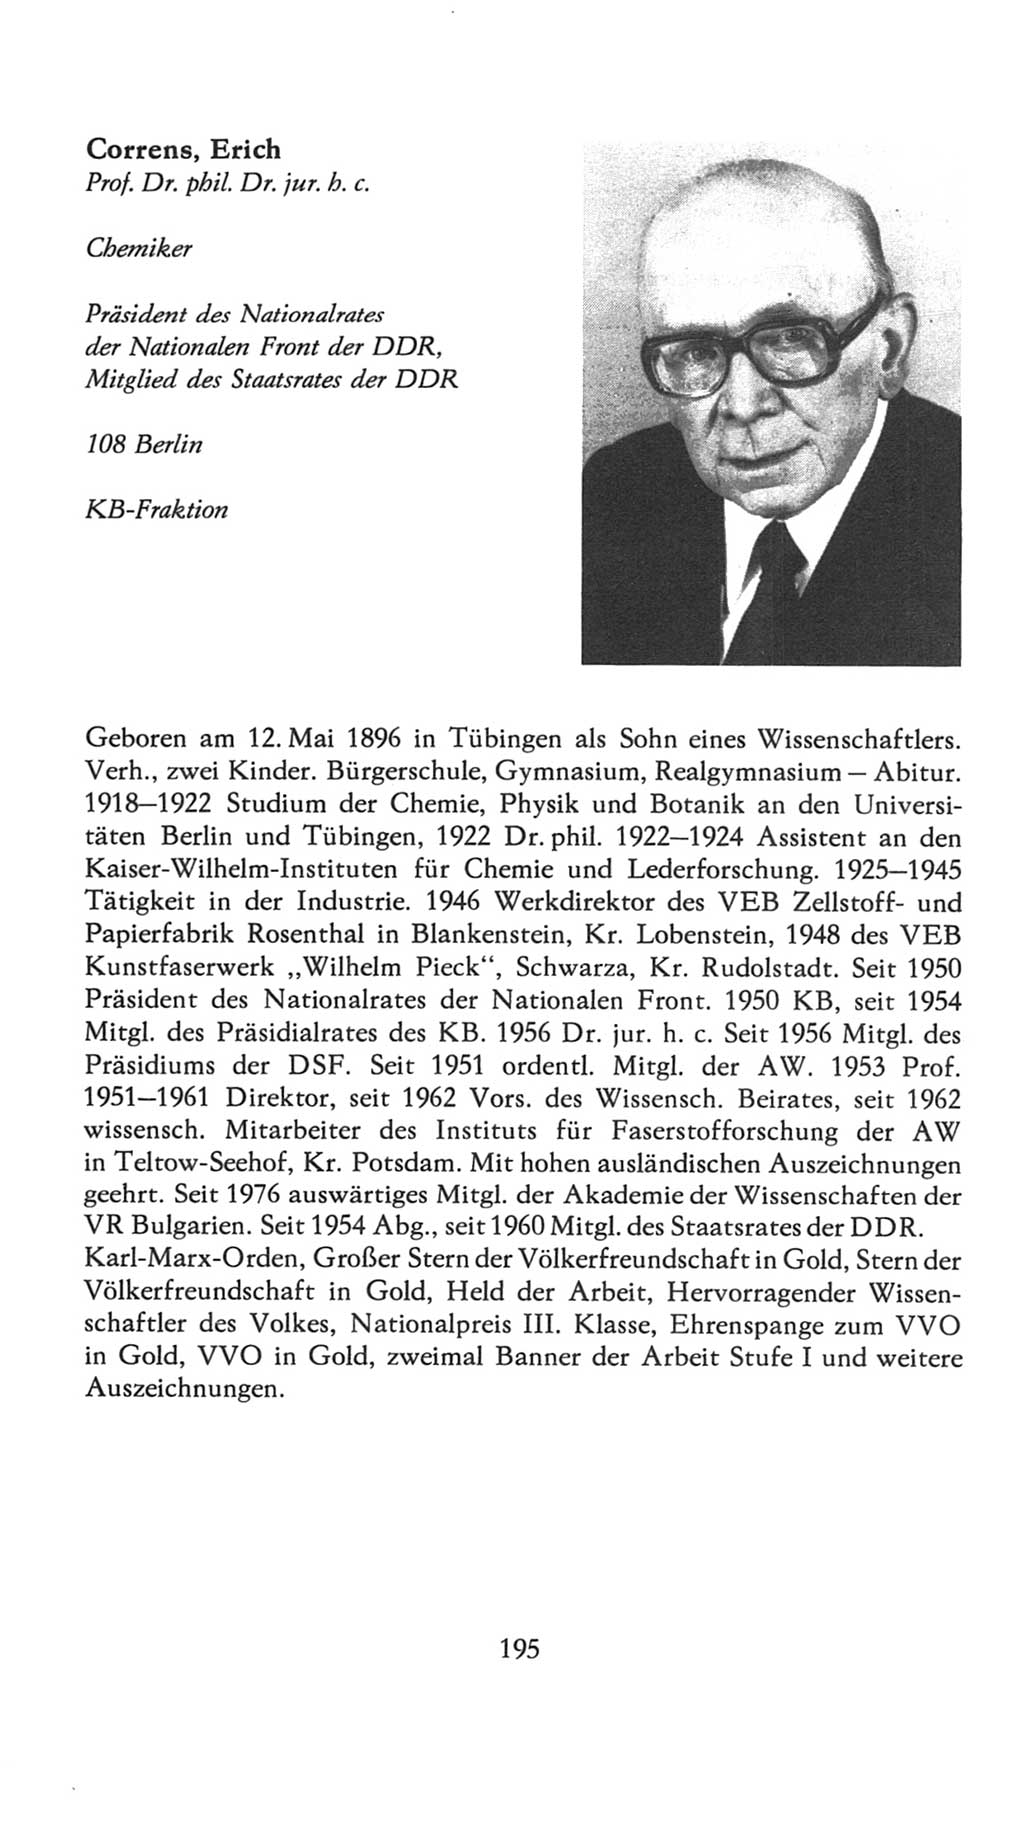 Volkskammer (VK) der Deutschen Demokratischen Republik (DDR), 7. Wahlperiode 1976-1981, Seite 195 (VK. DDR 7. WP. 1976-1981, S. 195)